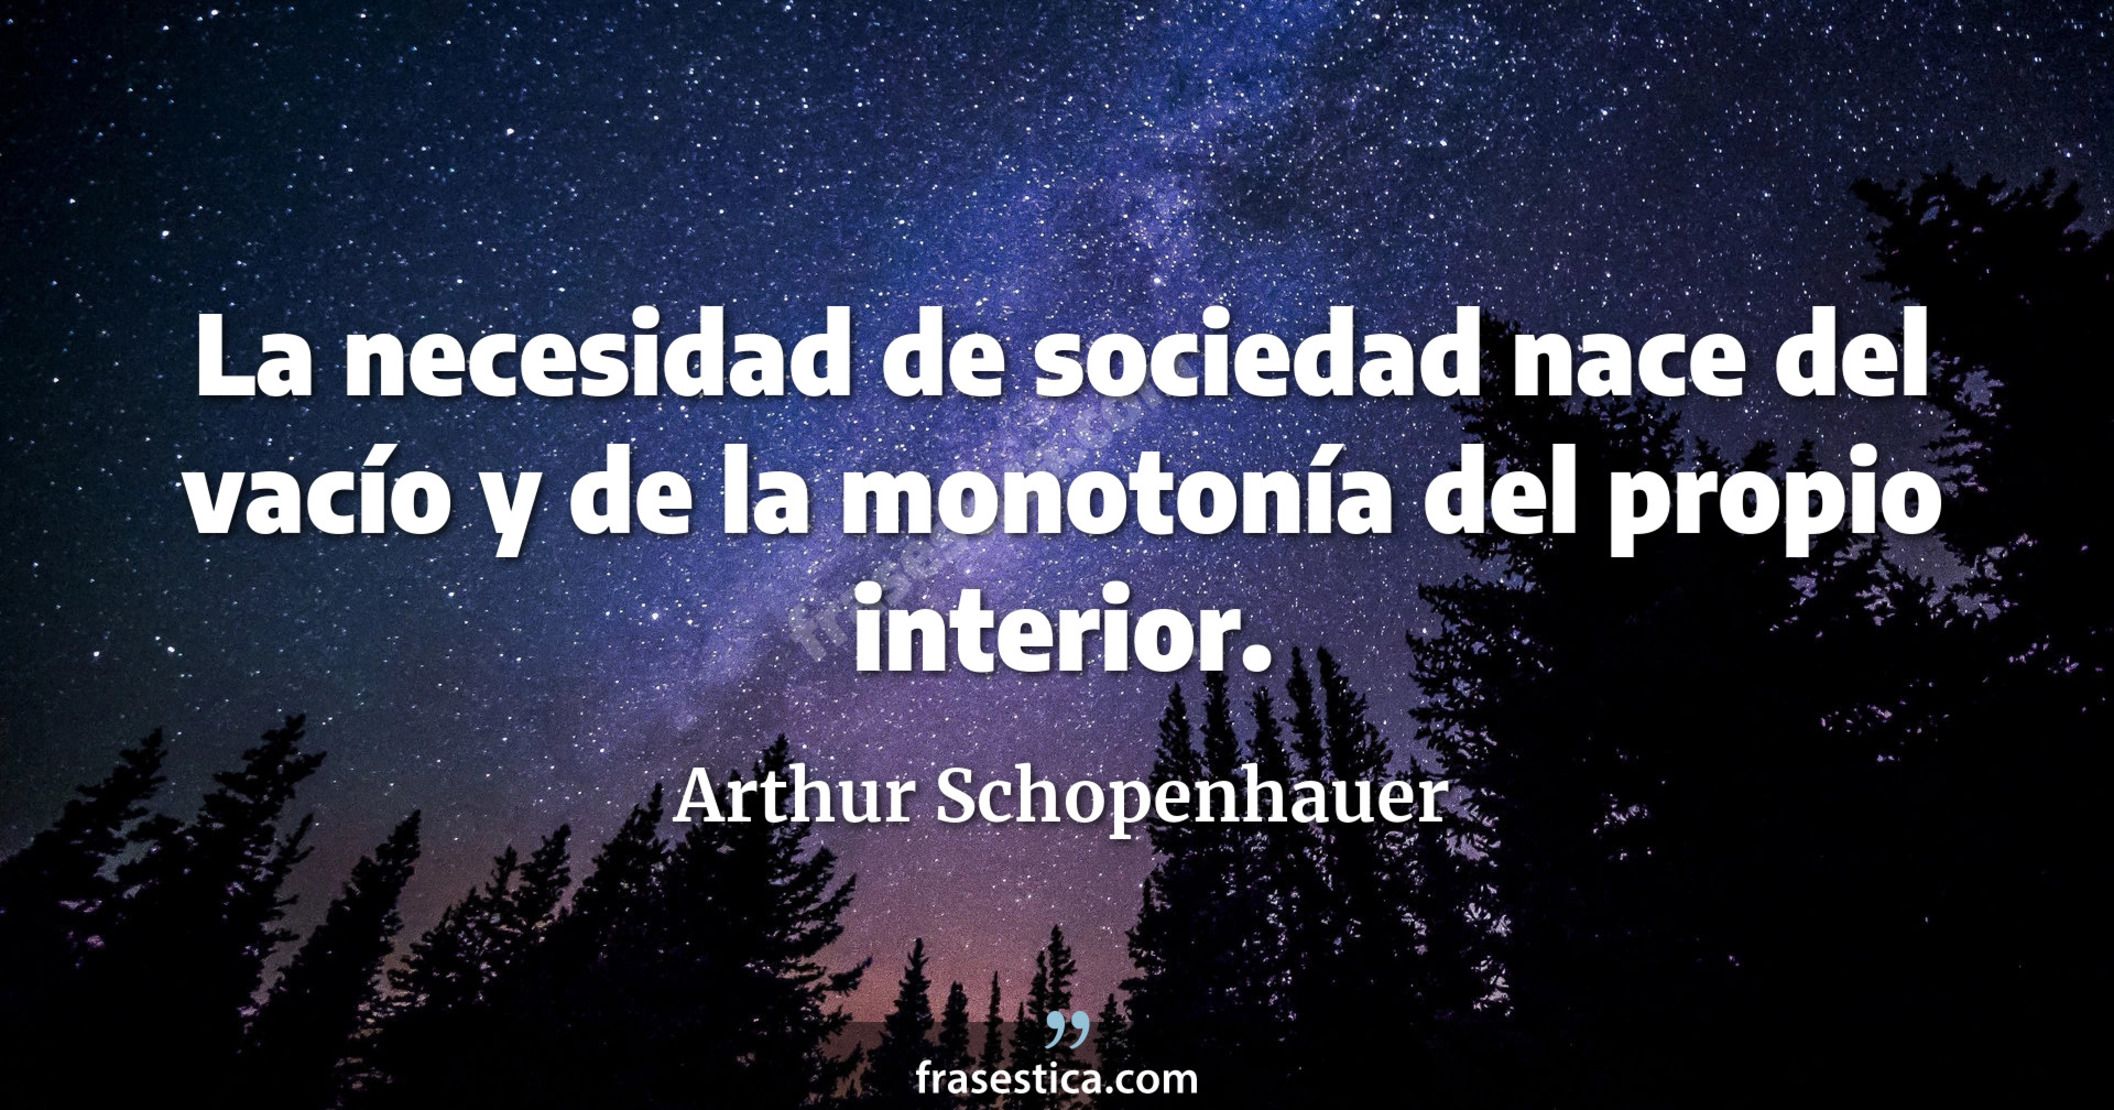 La necesidad de sociedad nace del vacío y de la monotonía del propio interior. - Arthur Schopenhauer